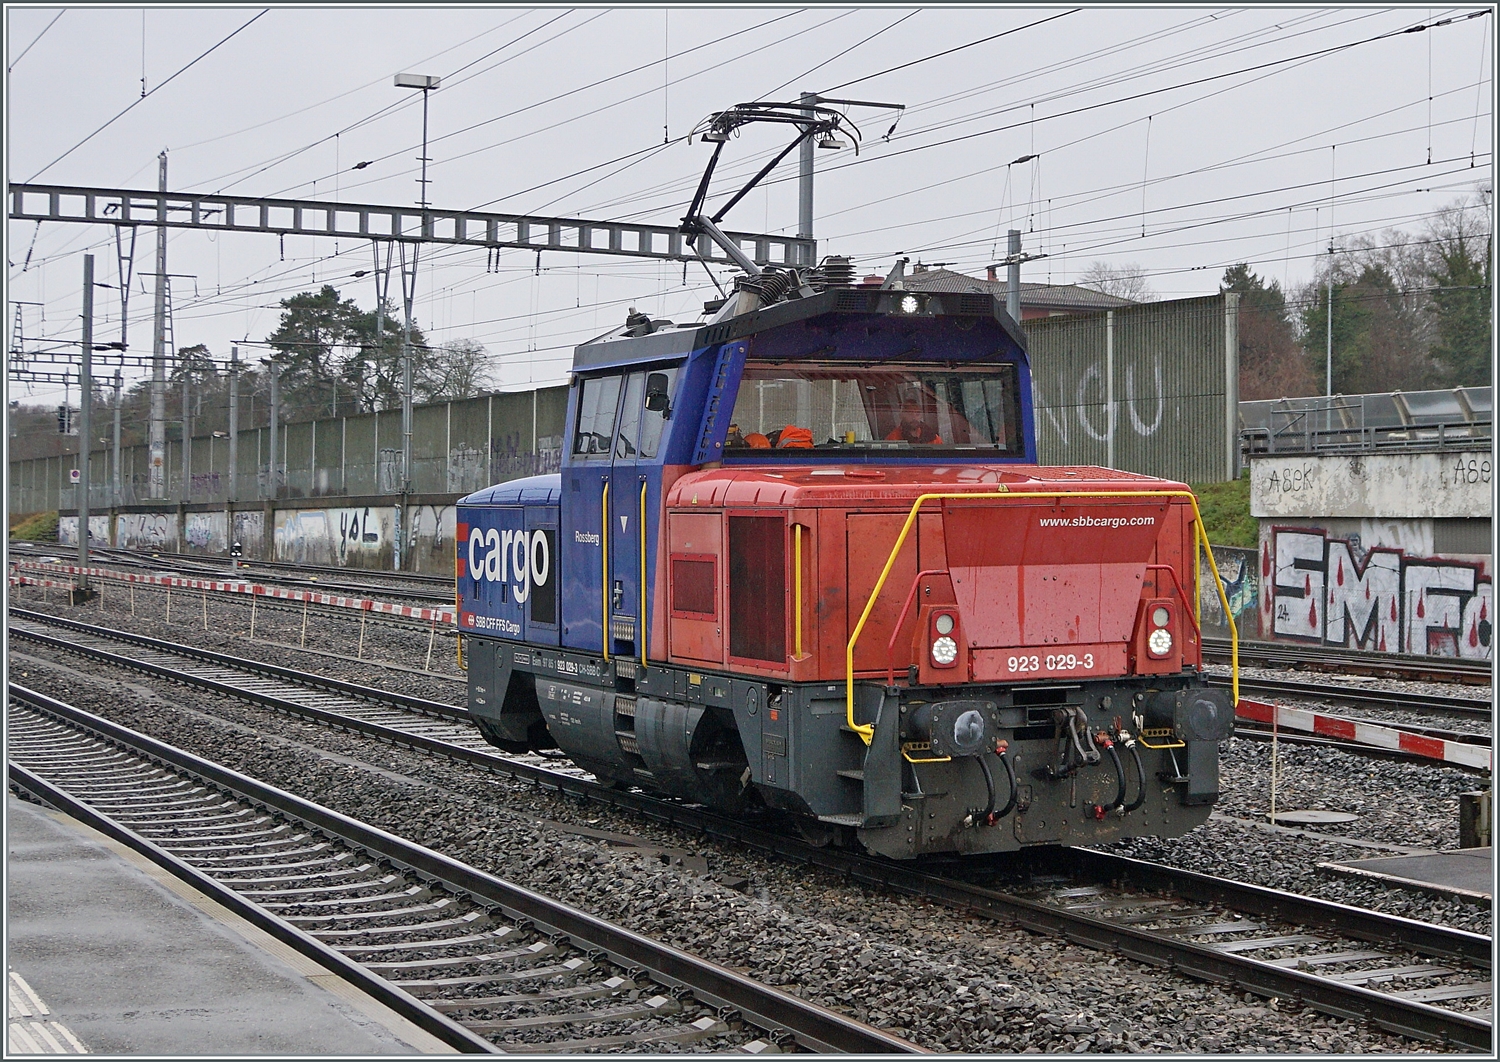 Die SBB Cargo Eem 923 029-9  Rossberg  beim Rangieren in Morges.

22. Feb. 2024